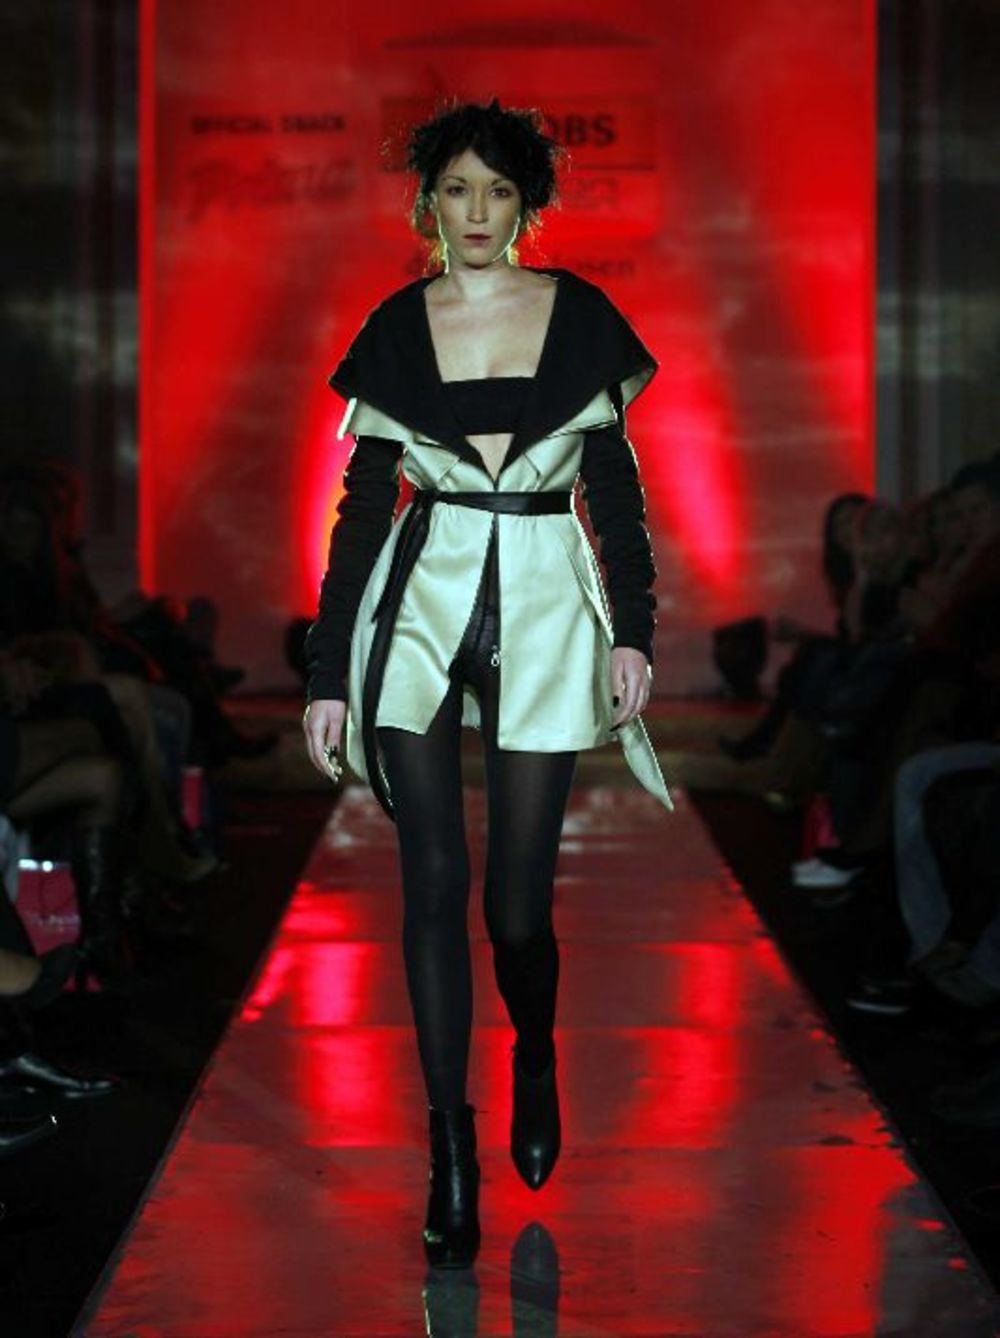 Pobednica konkursa Grazia Selection Sanda Simona Janković, predstavila je na Jacobs Fashion Selectionu 12. oktobra u balskoj dvorani Doma garde kolekciju Dark Side of Venus, koja je inspirisana tamnom stranom ženske prirode